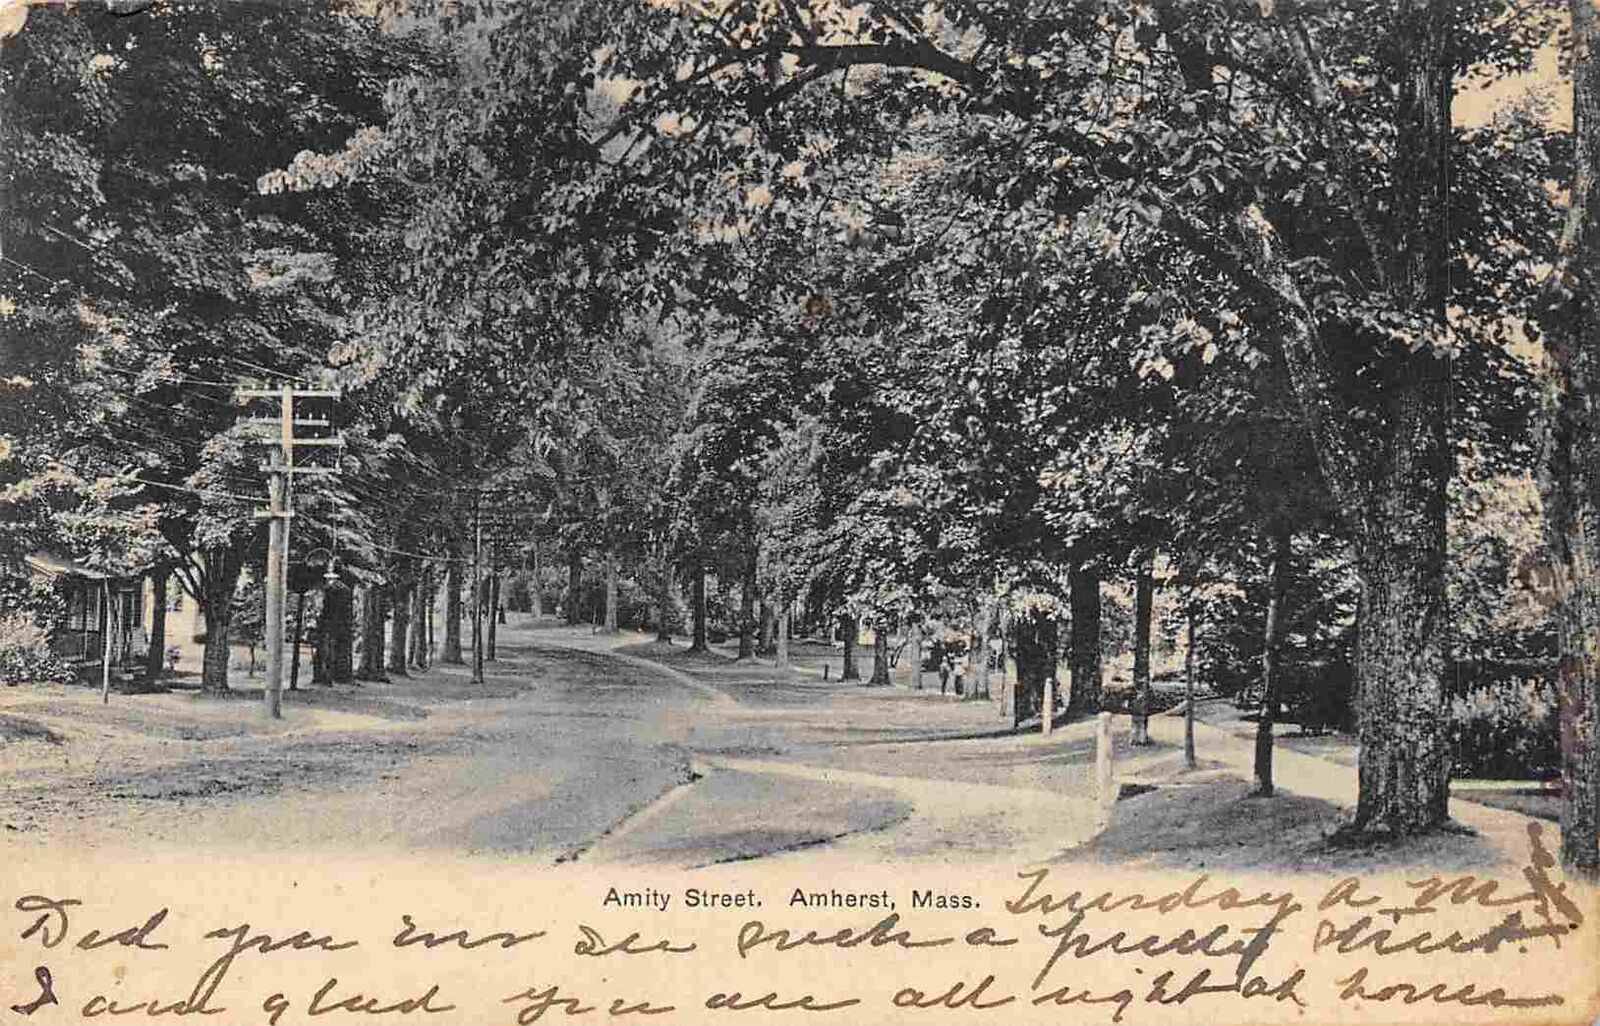 Amity Street Amherst Massachusetts 1911 postcard